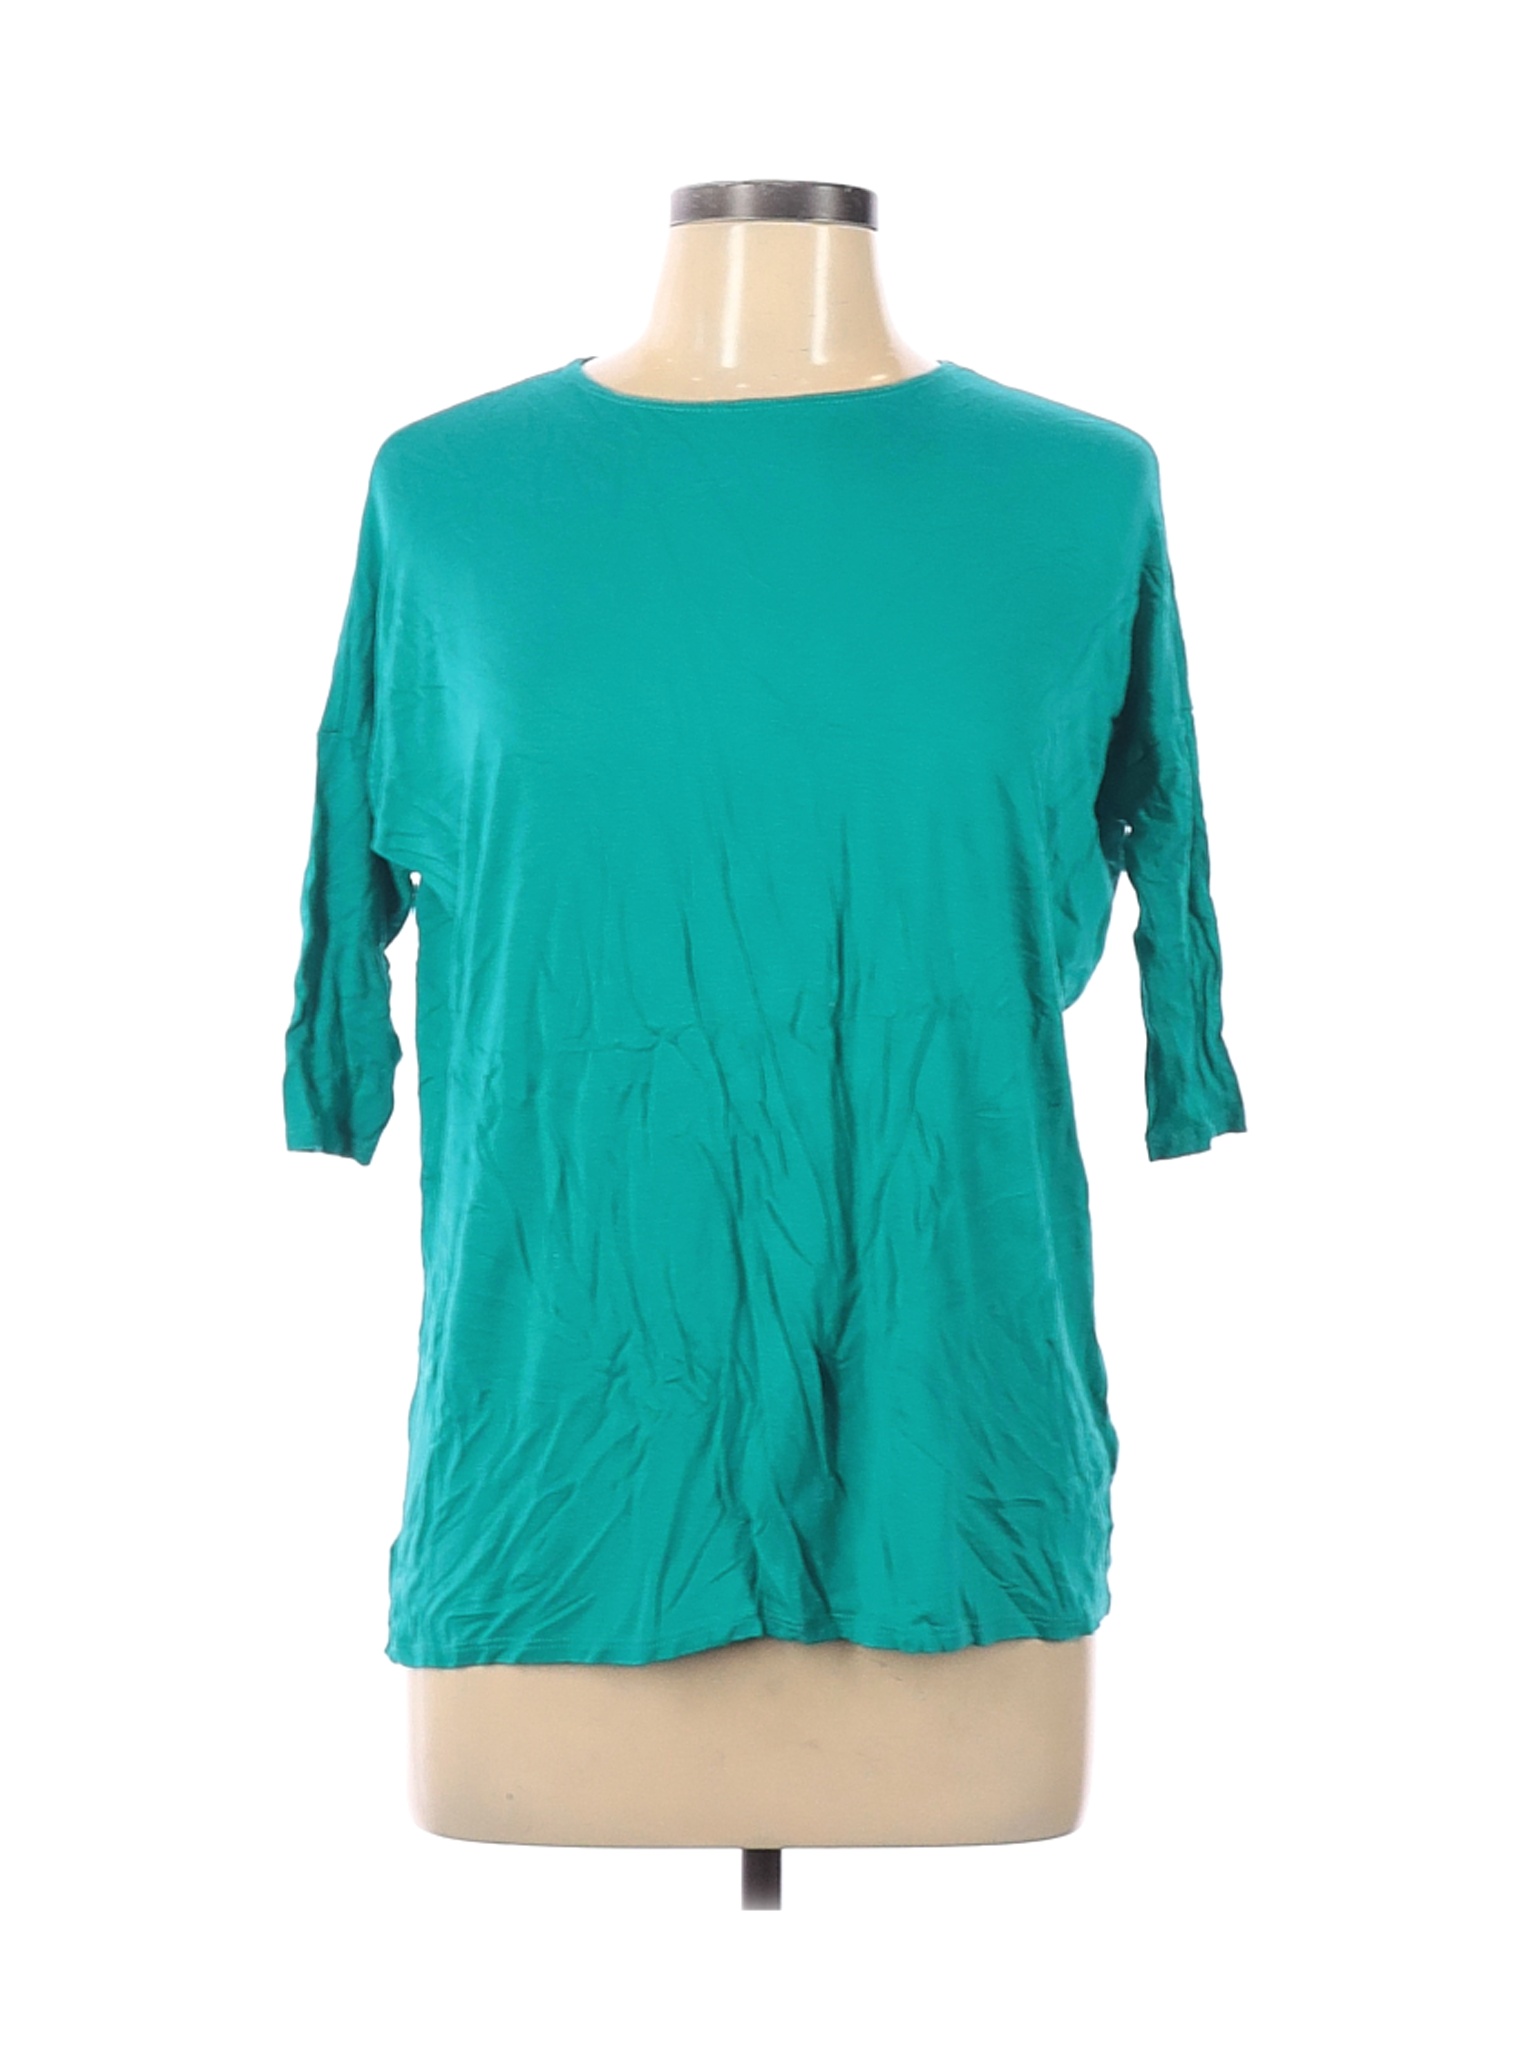 Pomelo Women Blue 3/4 Sleeve T-Shirt L | eBay